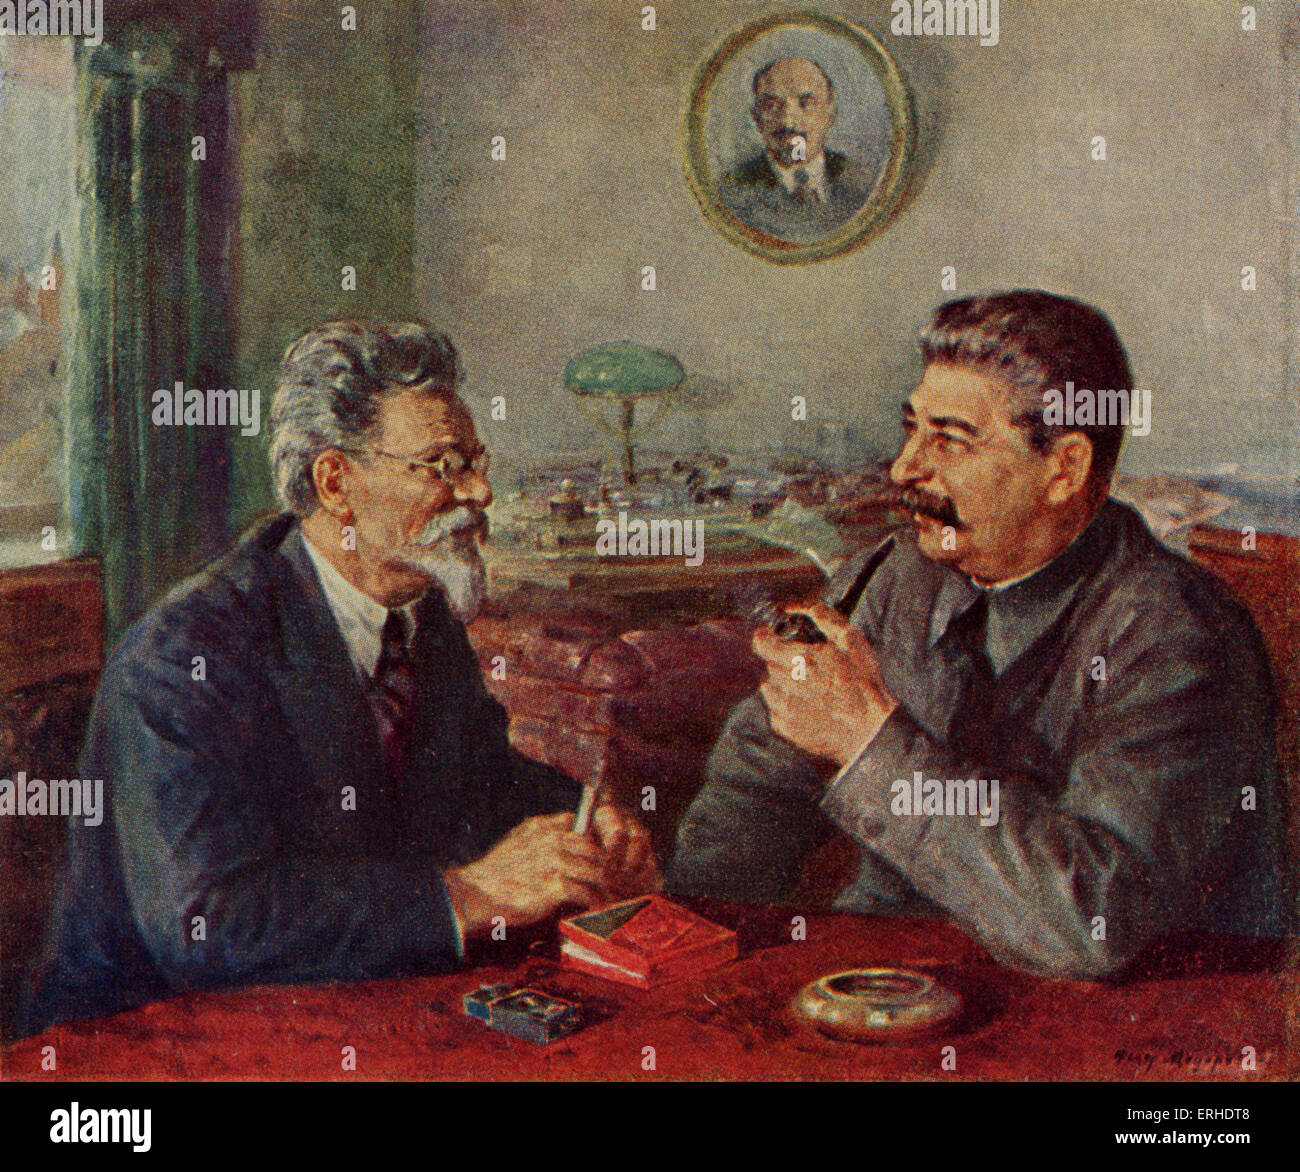 Joseph Staline et Mikhail Kalinin en conversation. Portrait de Staline peut être vu en arrière-plan. Staline (1879-1935) : (Kalinin Banque D'Images